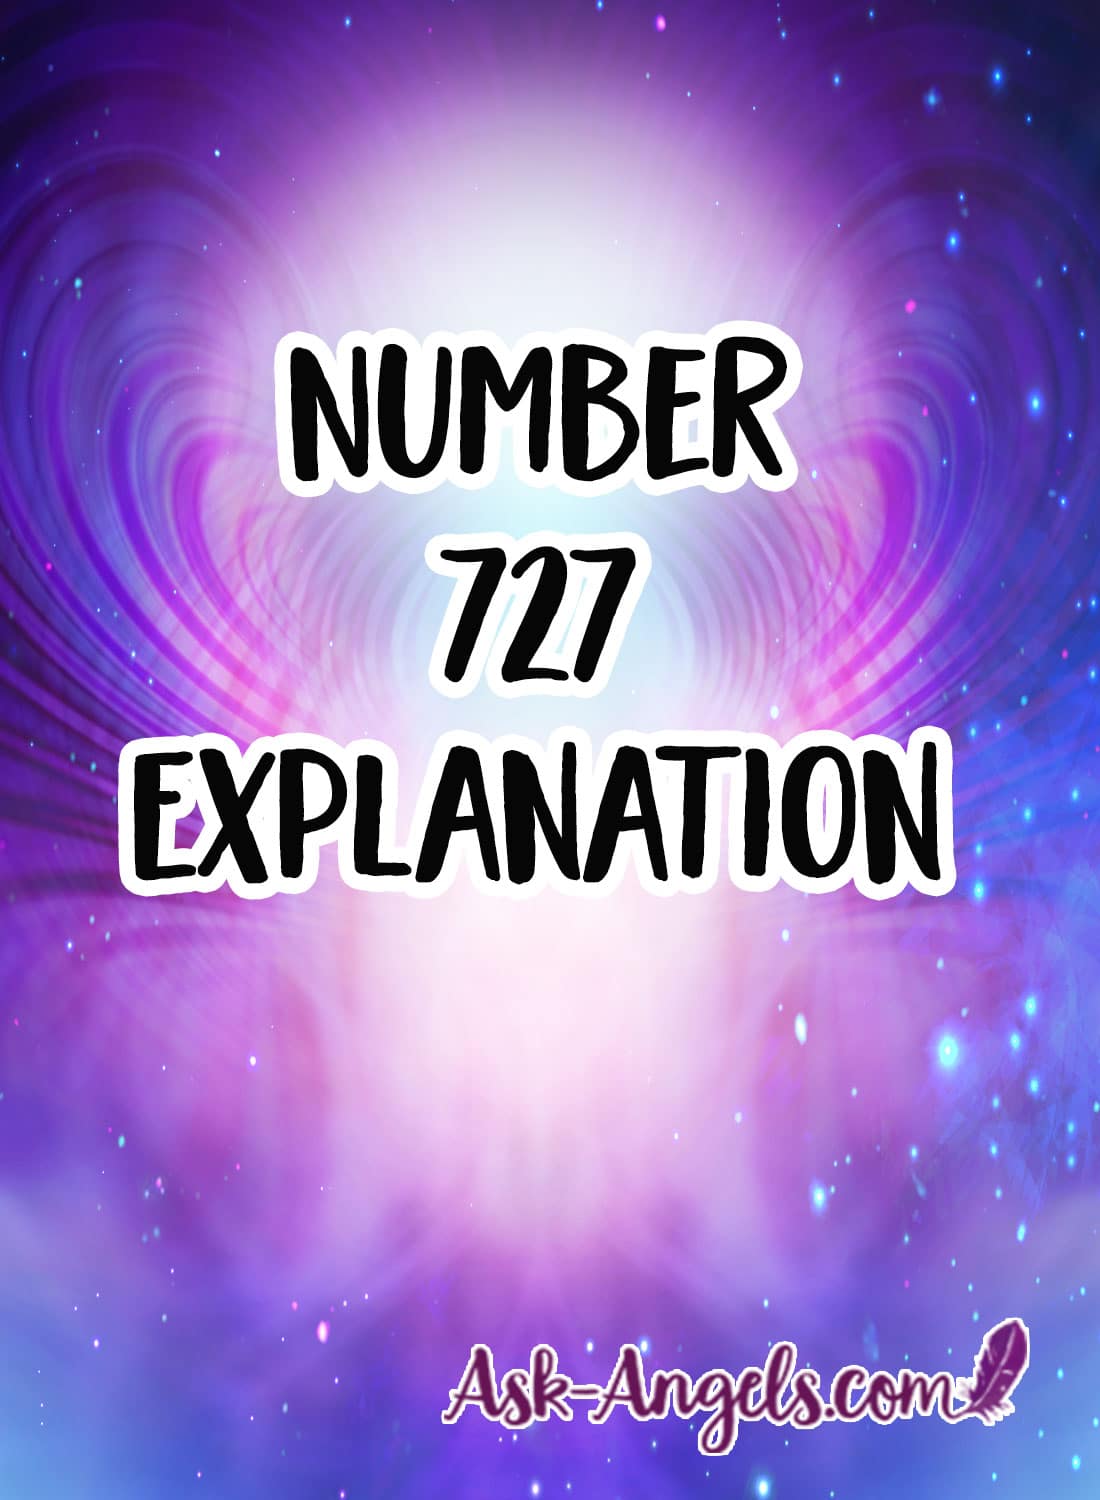 번호 727 설명